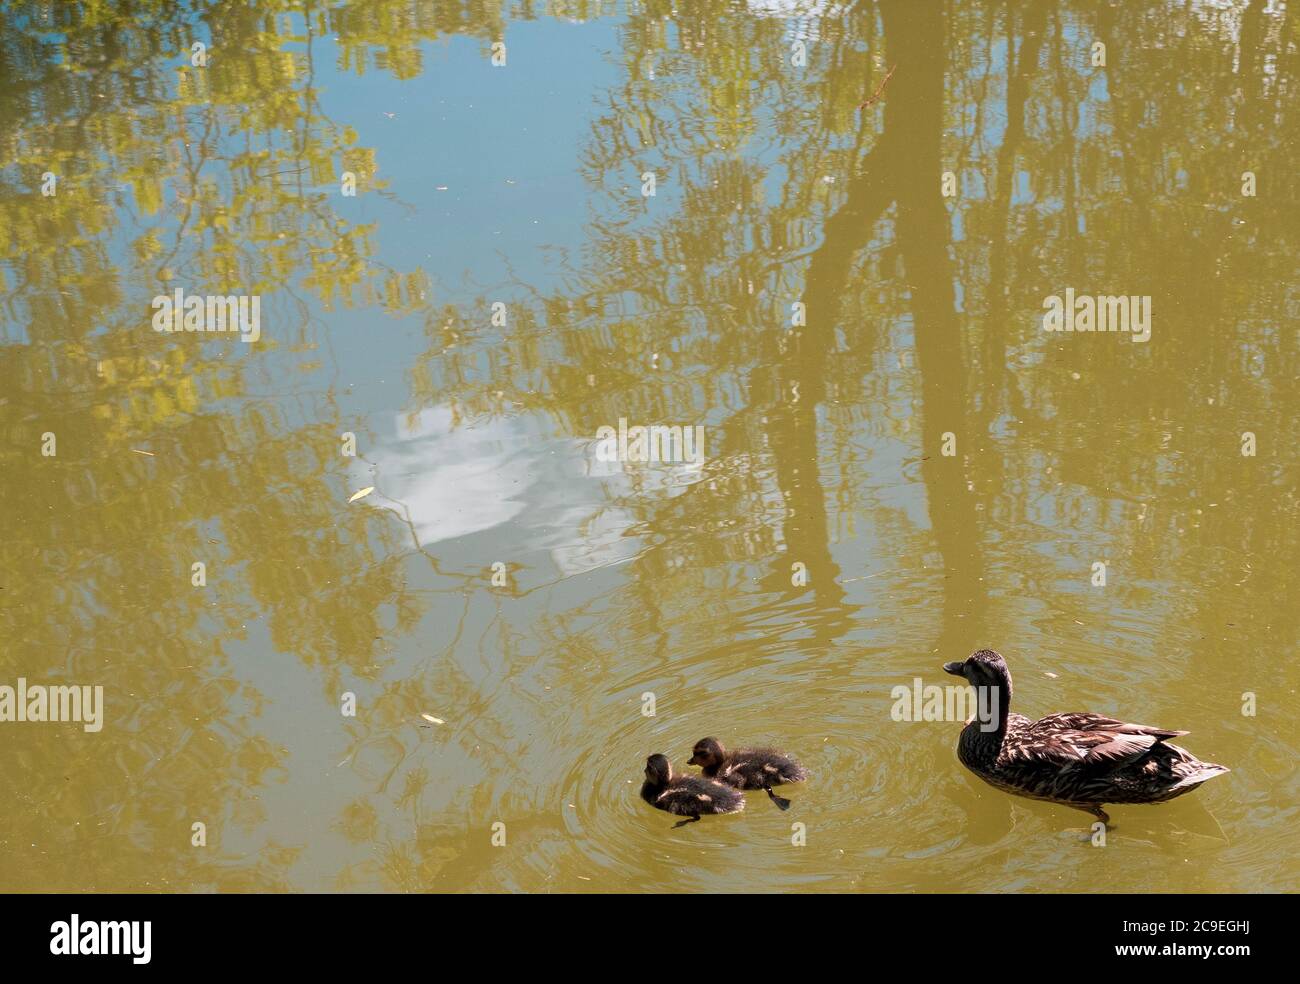 Paysage de canard et de canetons sur le canal de Kennet et Avon, Kintbury, Hungerford, Berkshire, Angleterre, Royaume-Uni, GB. Banque D'Images